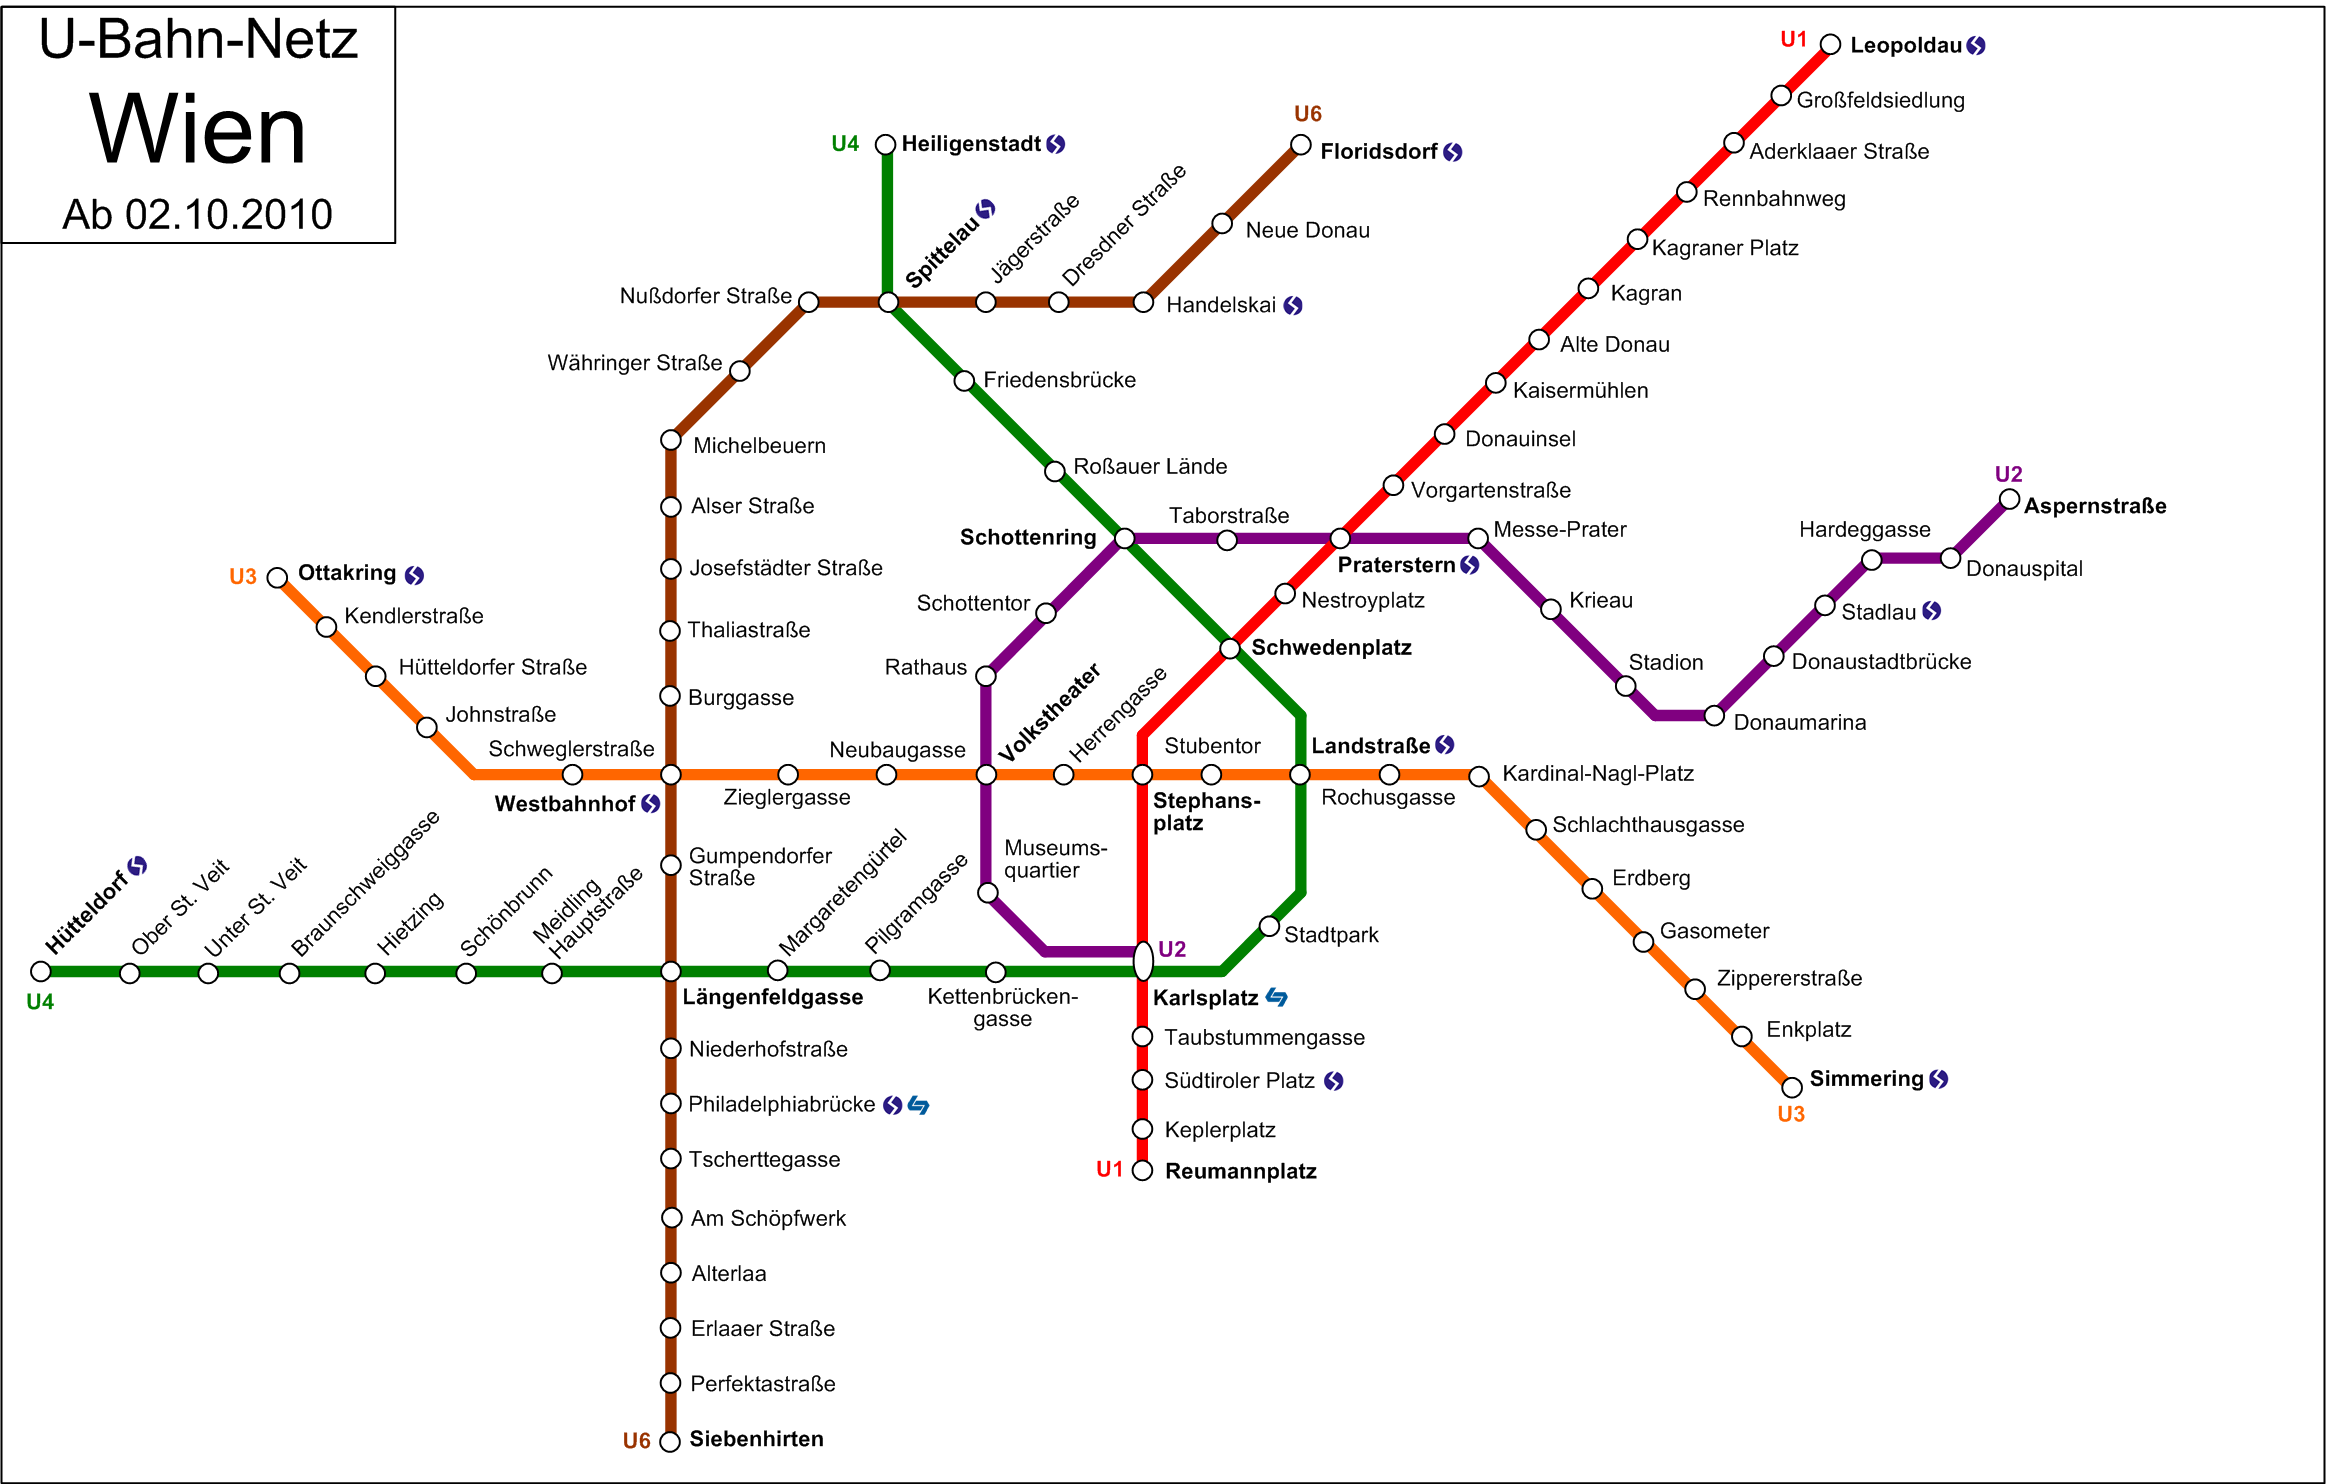 Vienna U-Bahn map